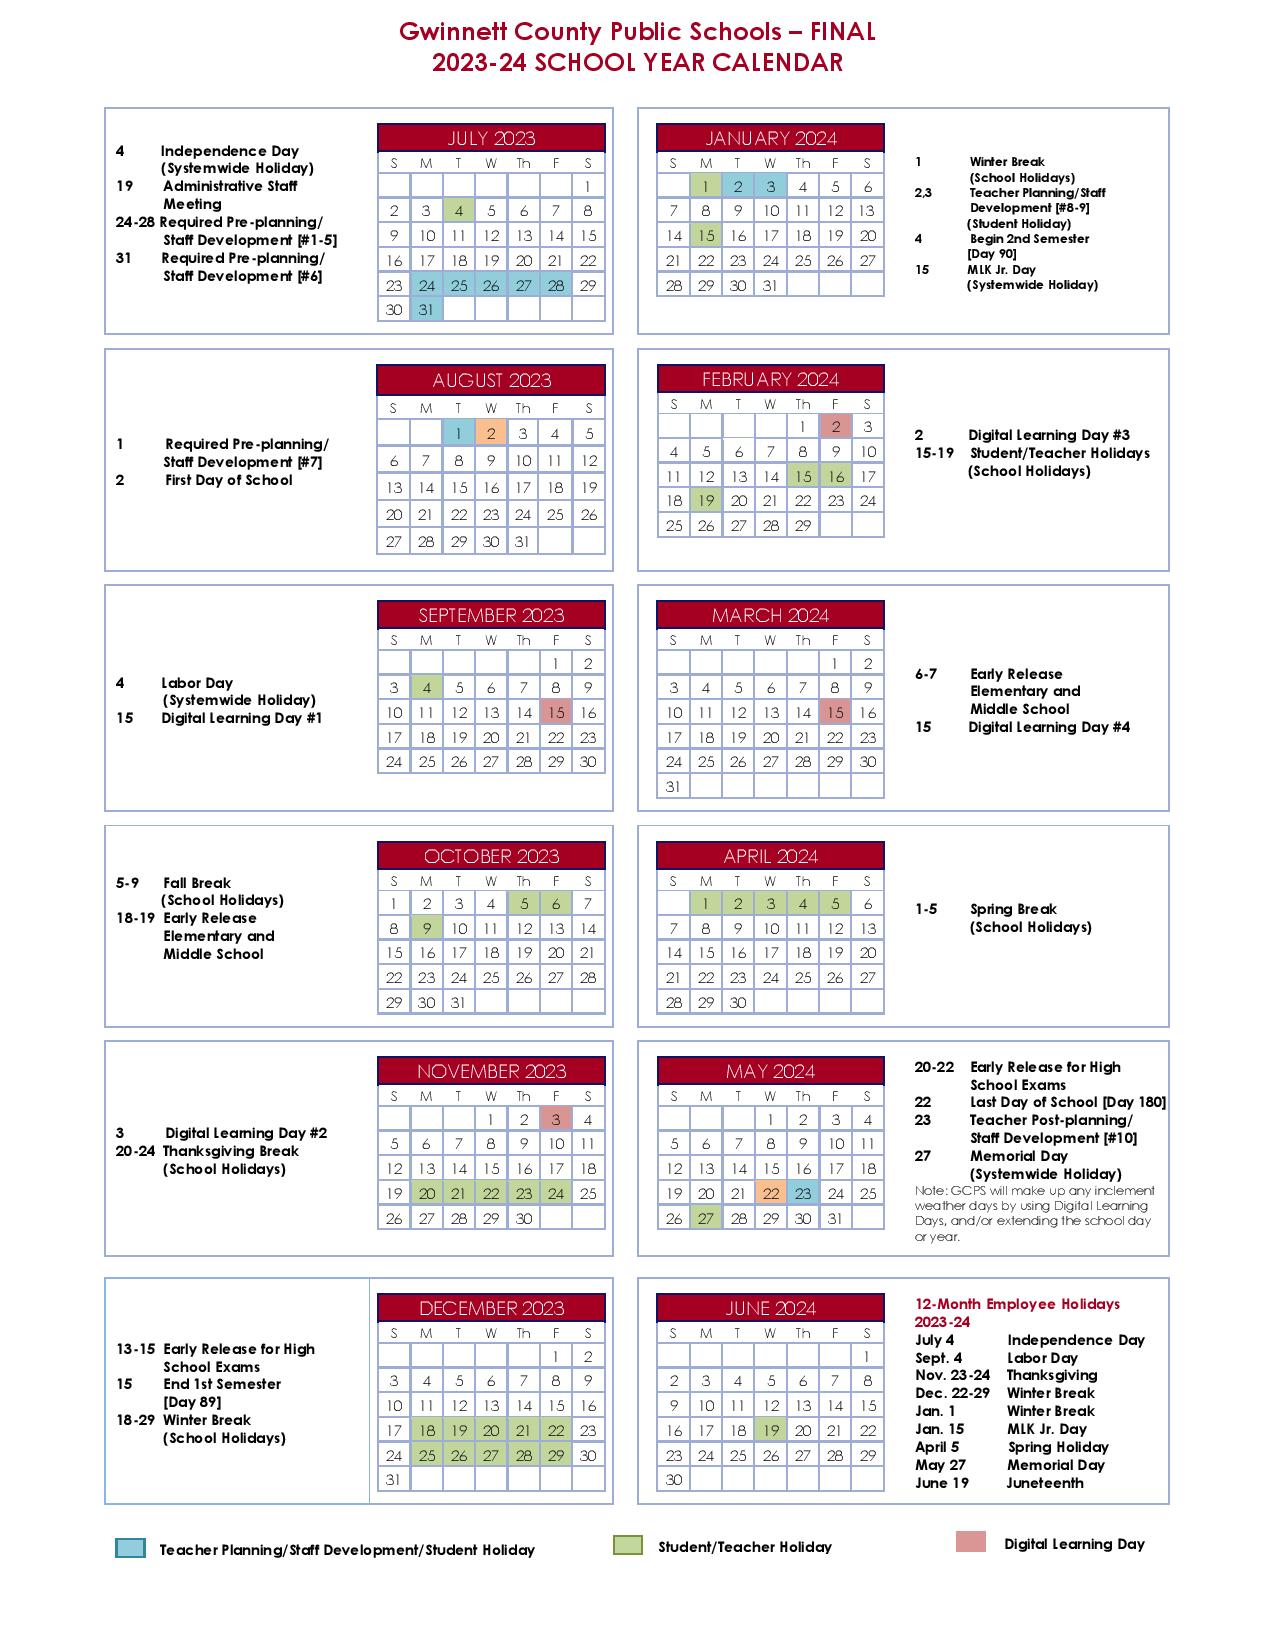 County Schools Calendar 20242025 (Holiday Breaks)